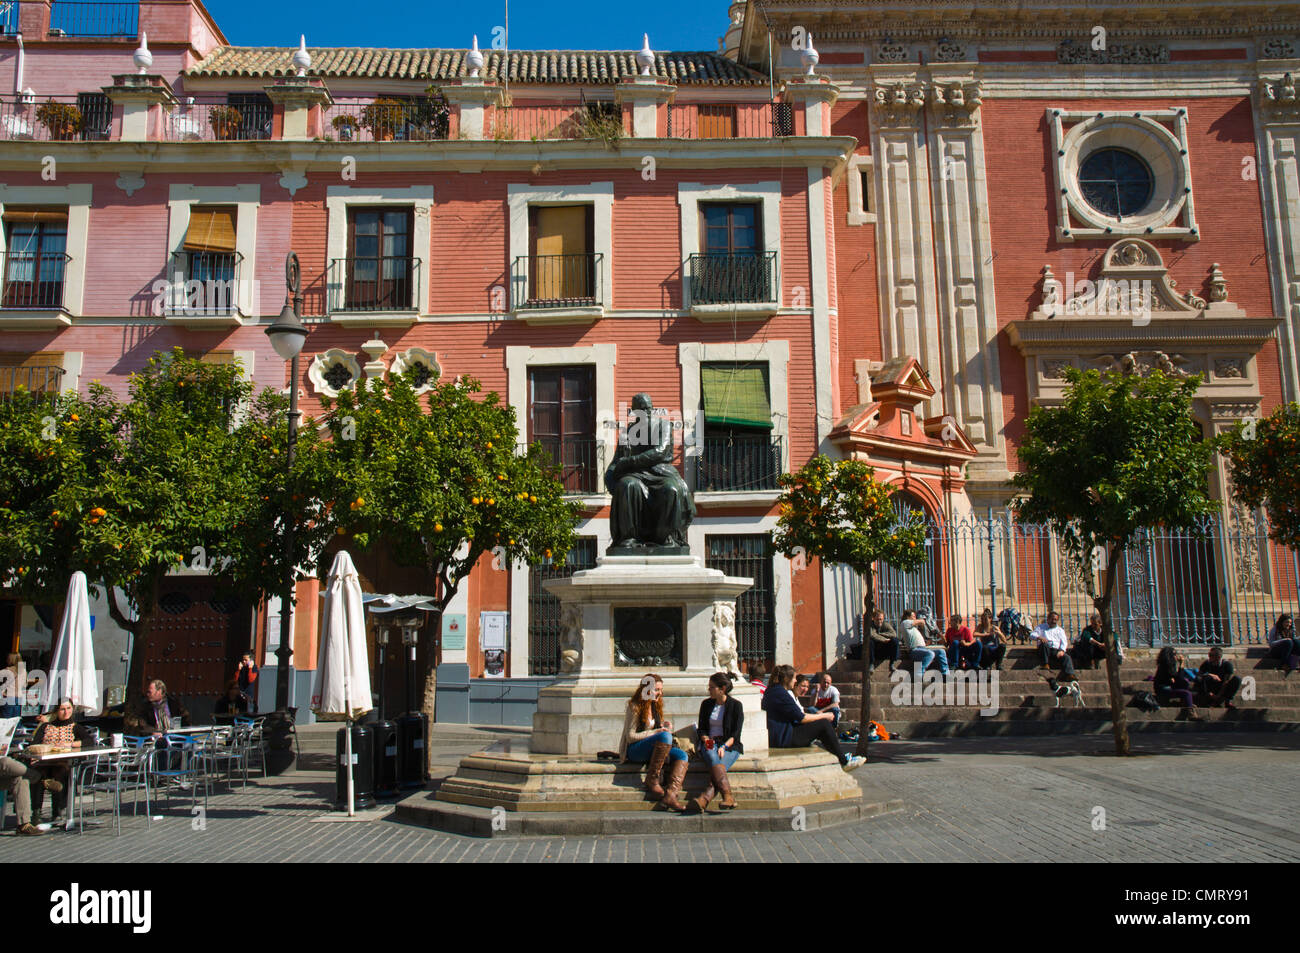 Plaza del Salvador square central Seville Andalusia Spain Stock Photo